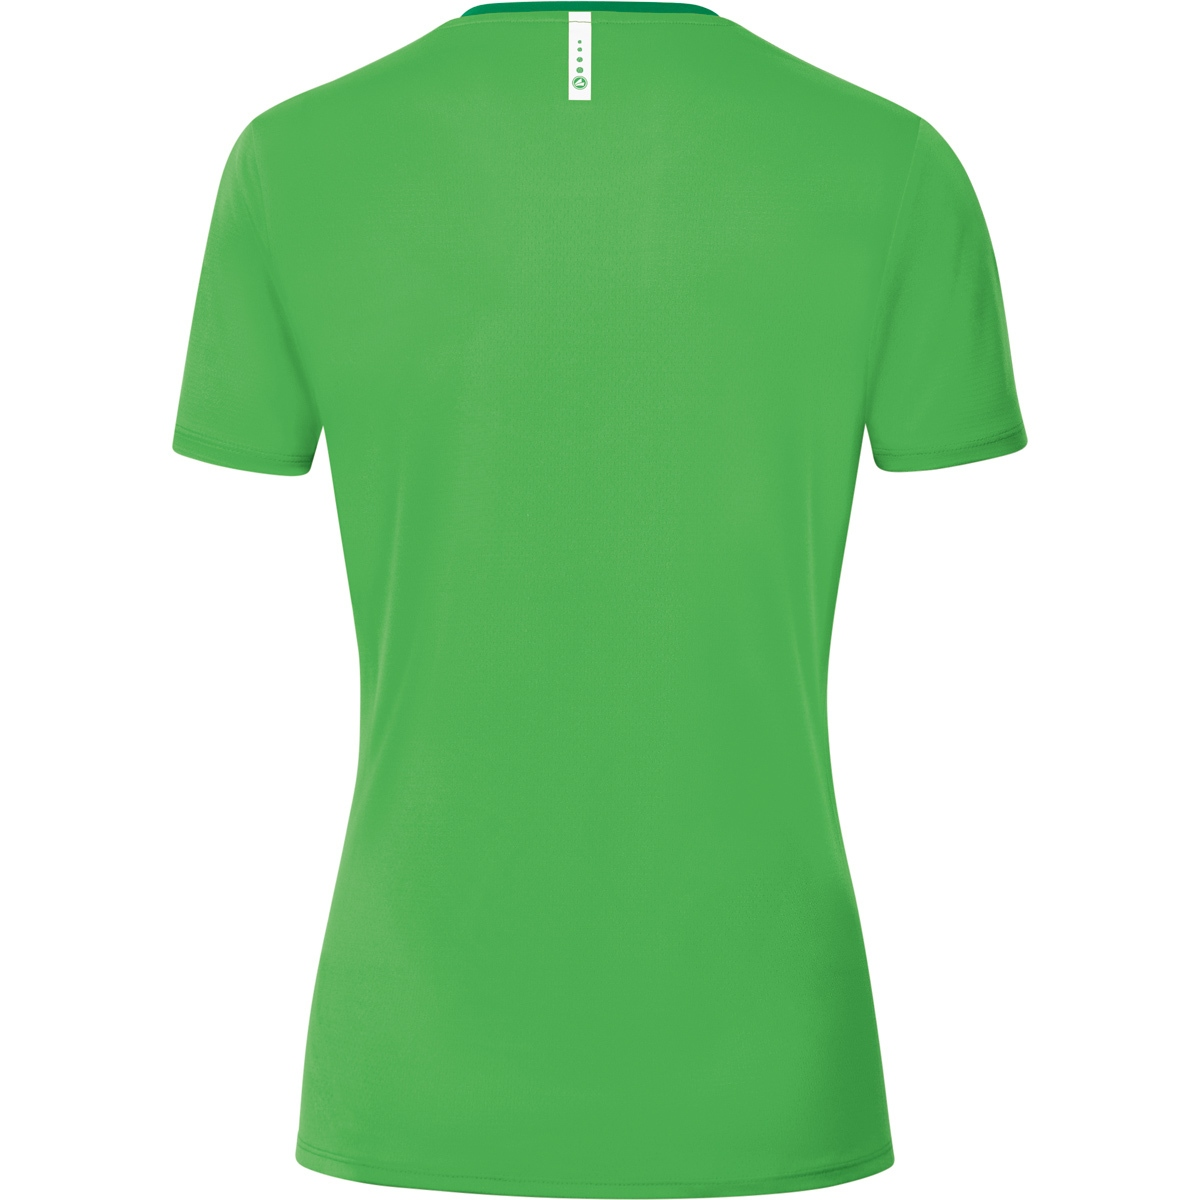 JAKO T-Shirt Champ 2.0 Damen, 36, Gr. green/sportgrün, soft 6120